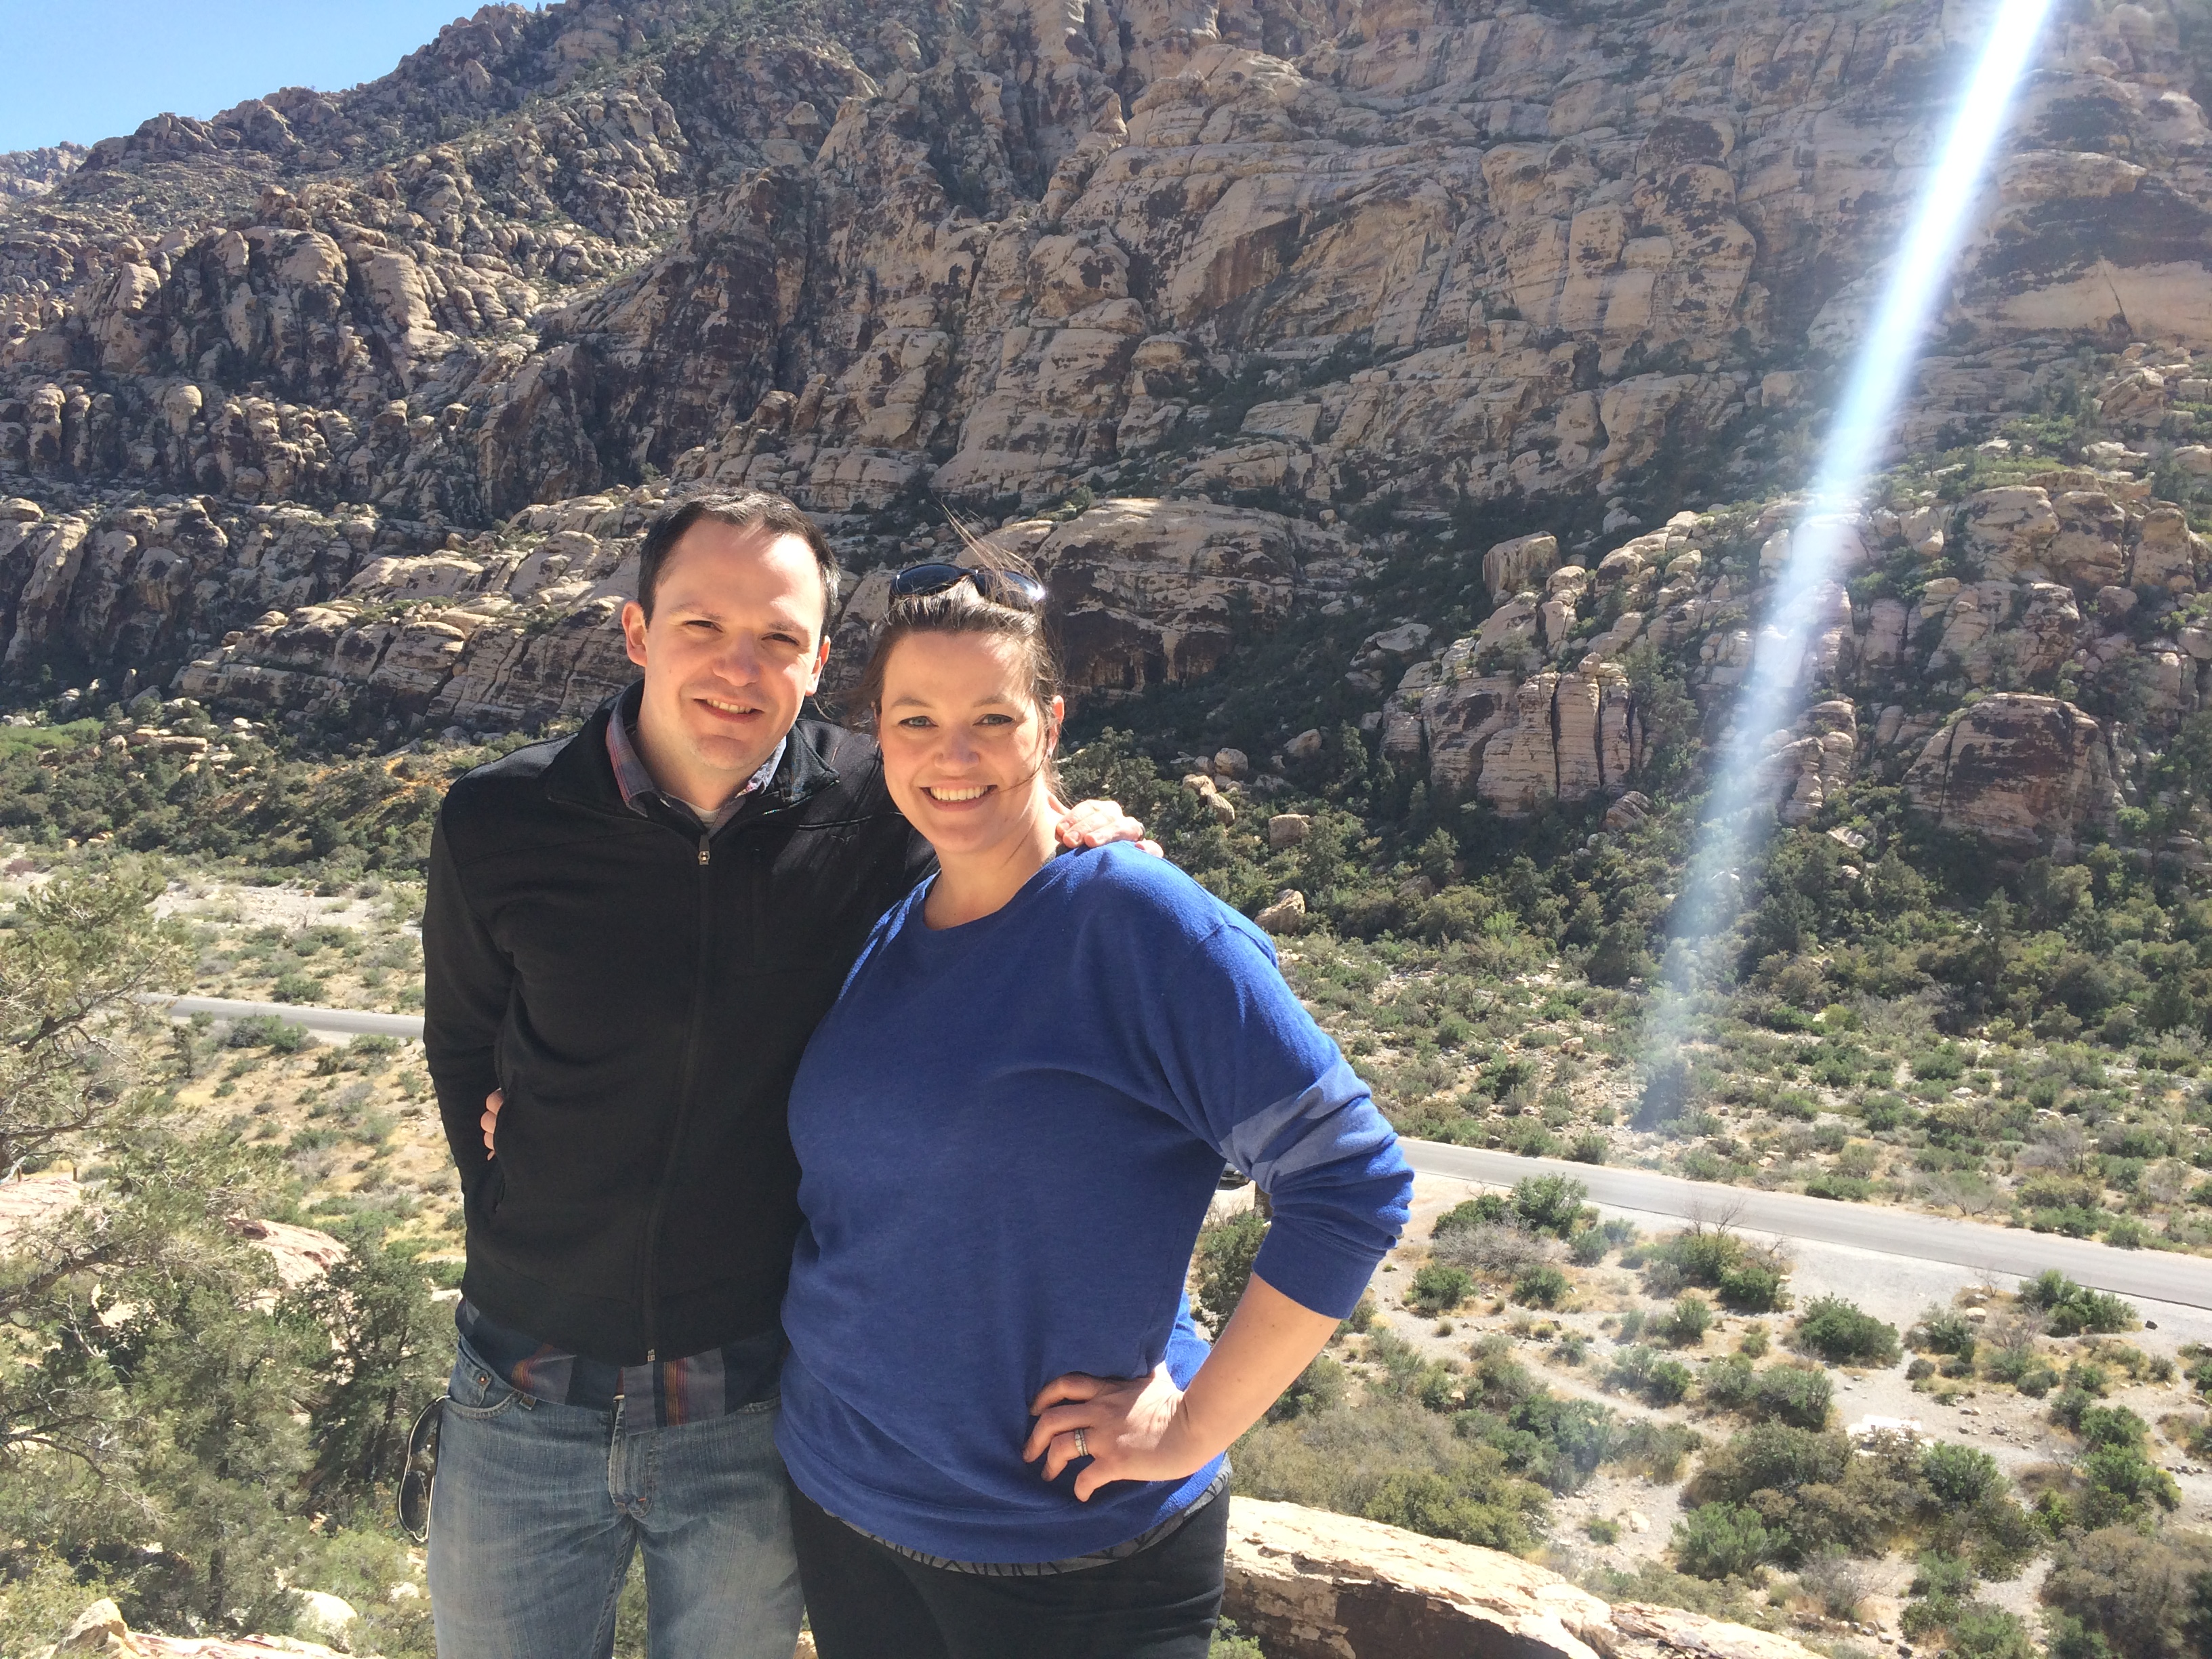 ESP Alumni, Amanda Fuller and her husband at Red Rock Canyon